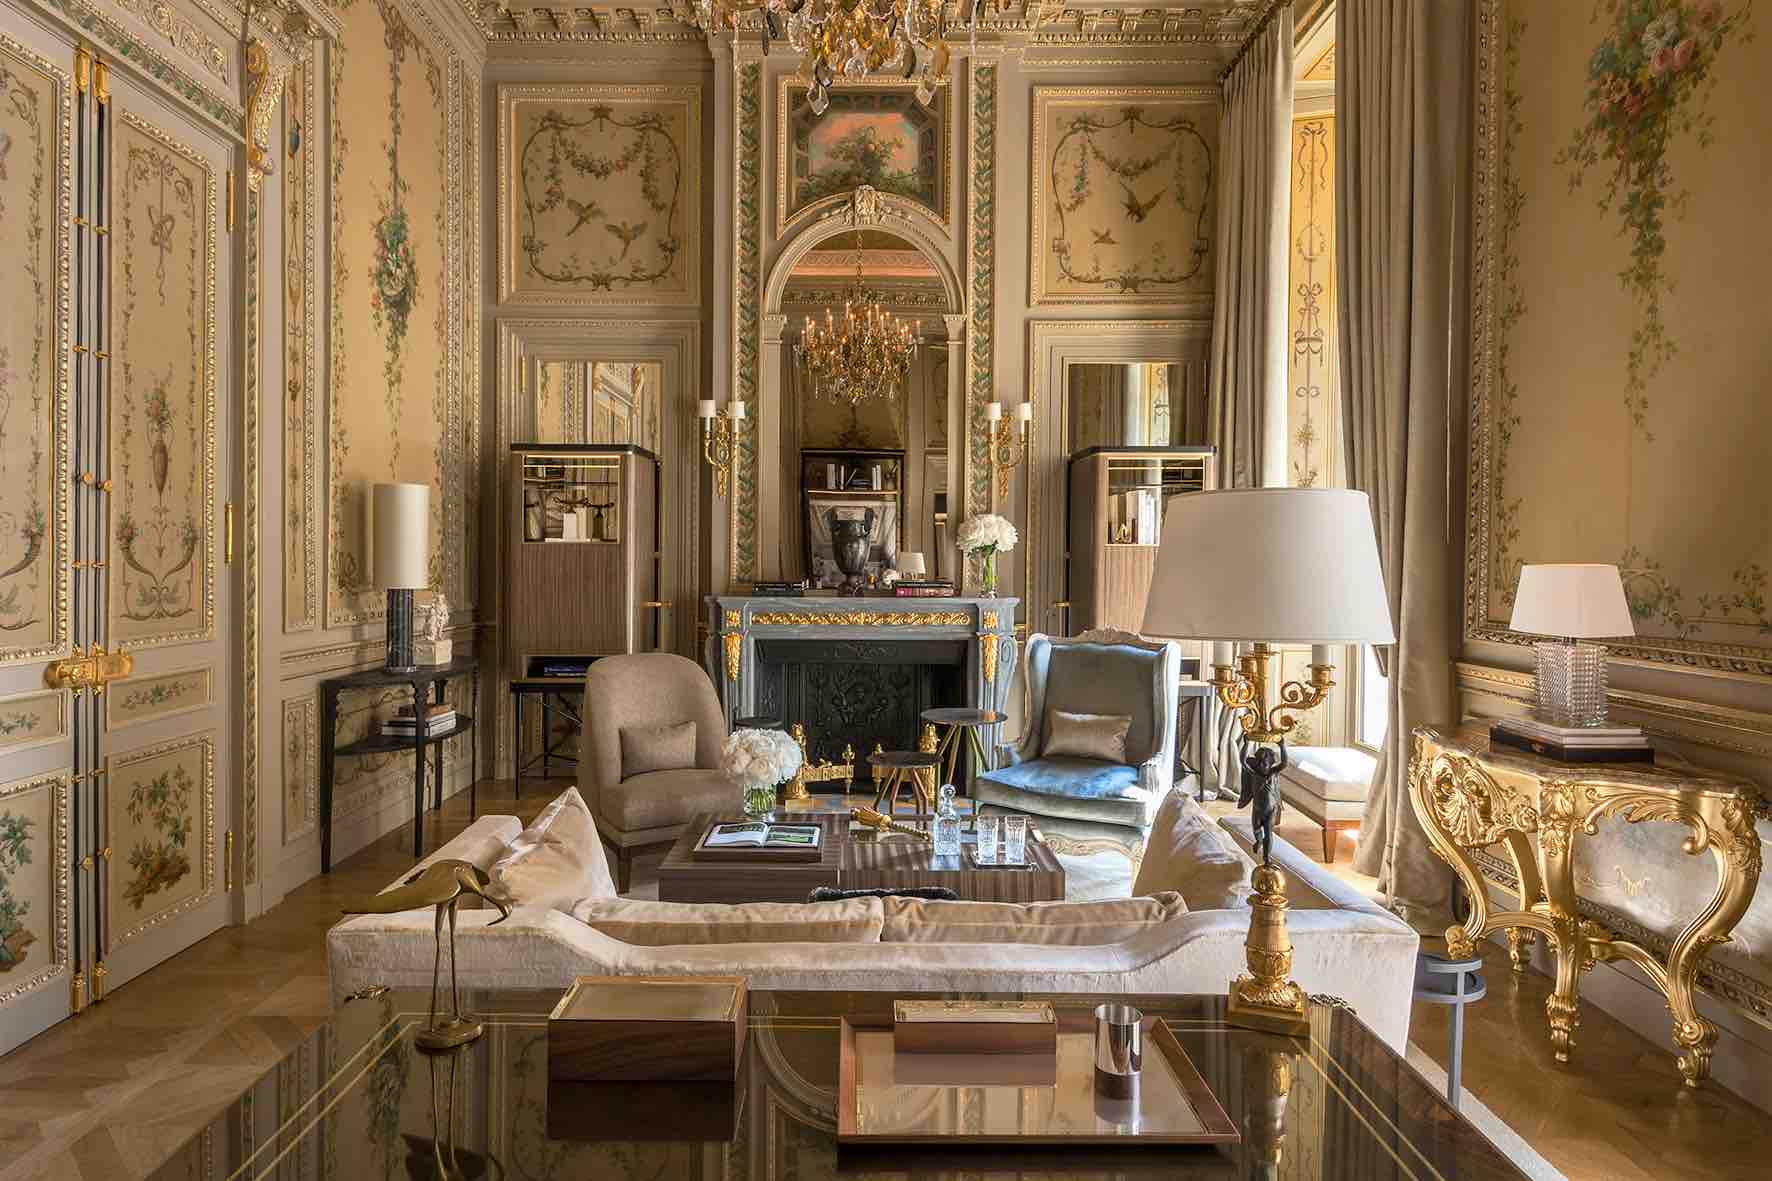 2. Suite Duc de Crillon - Living Room